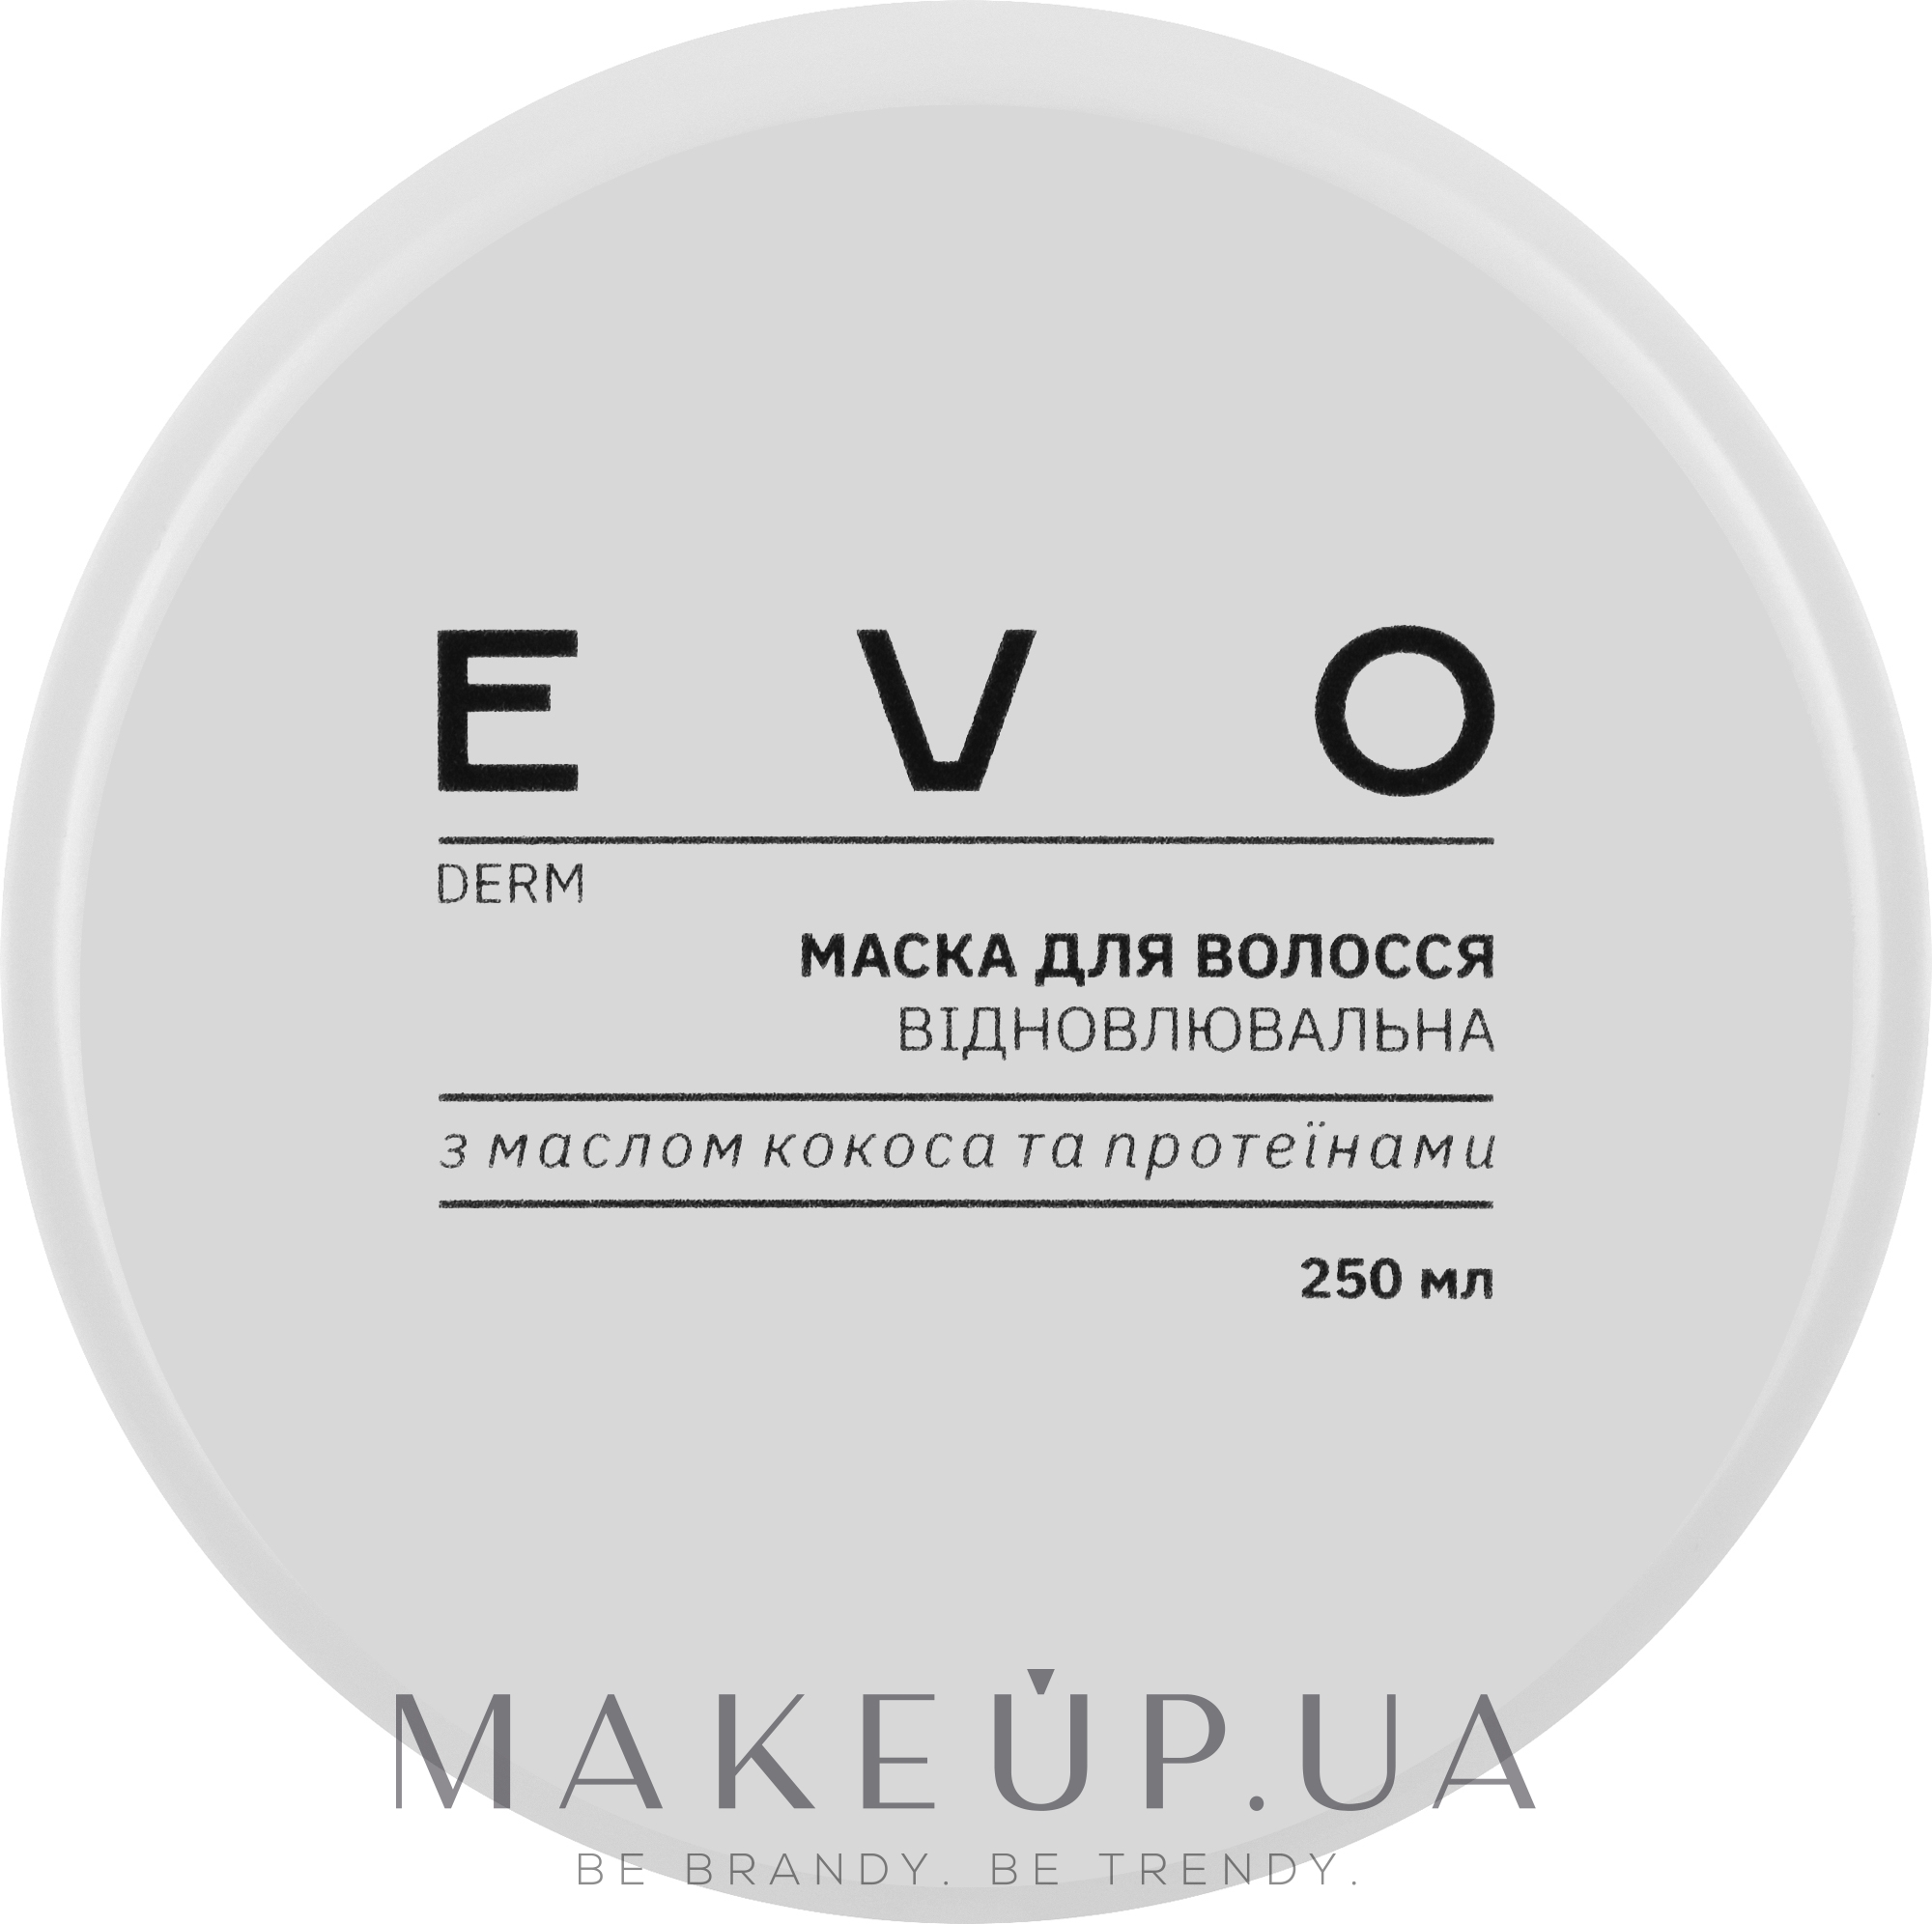 Восстанавливающая маска для волос с маслом кокоса и протеинами - EVO derm — фото 250ml